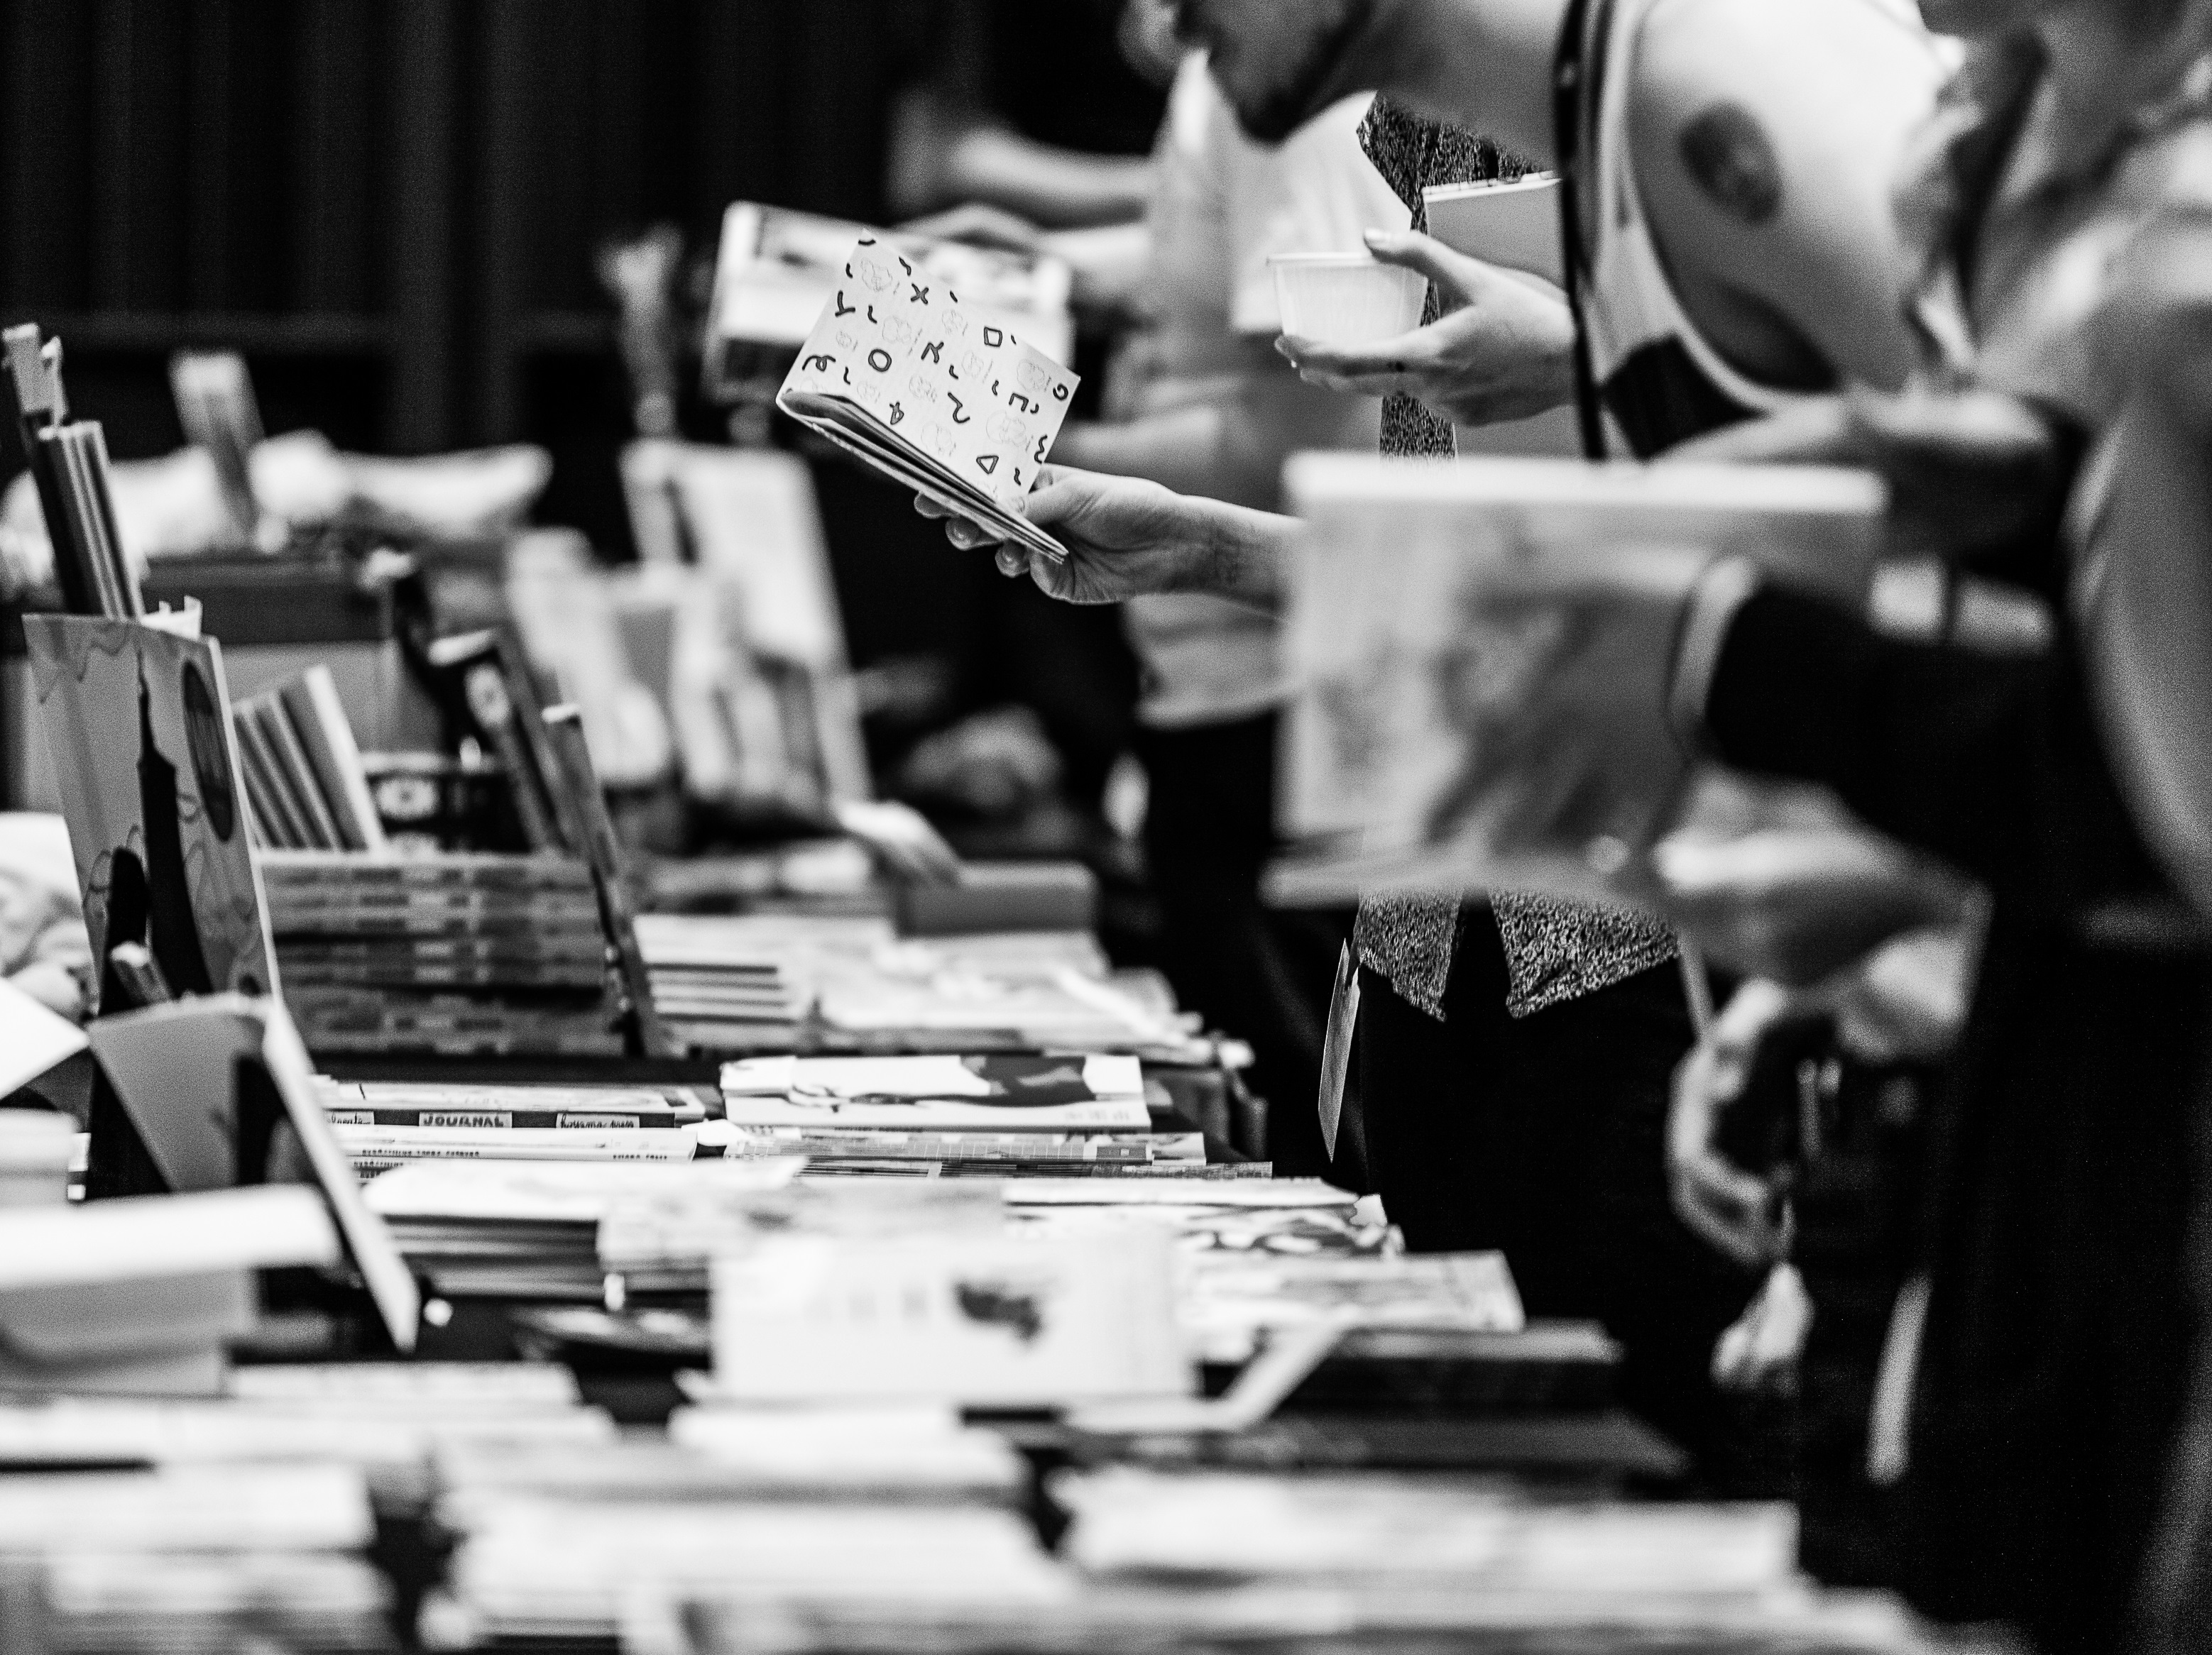 Bokbord på Seriefestivalen och besökare som tar upp och bläddrar i böcker.